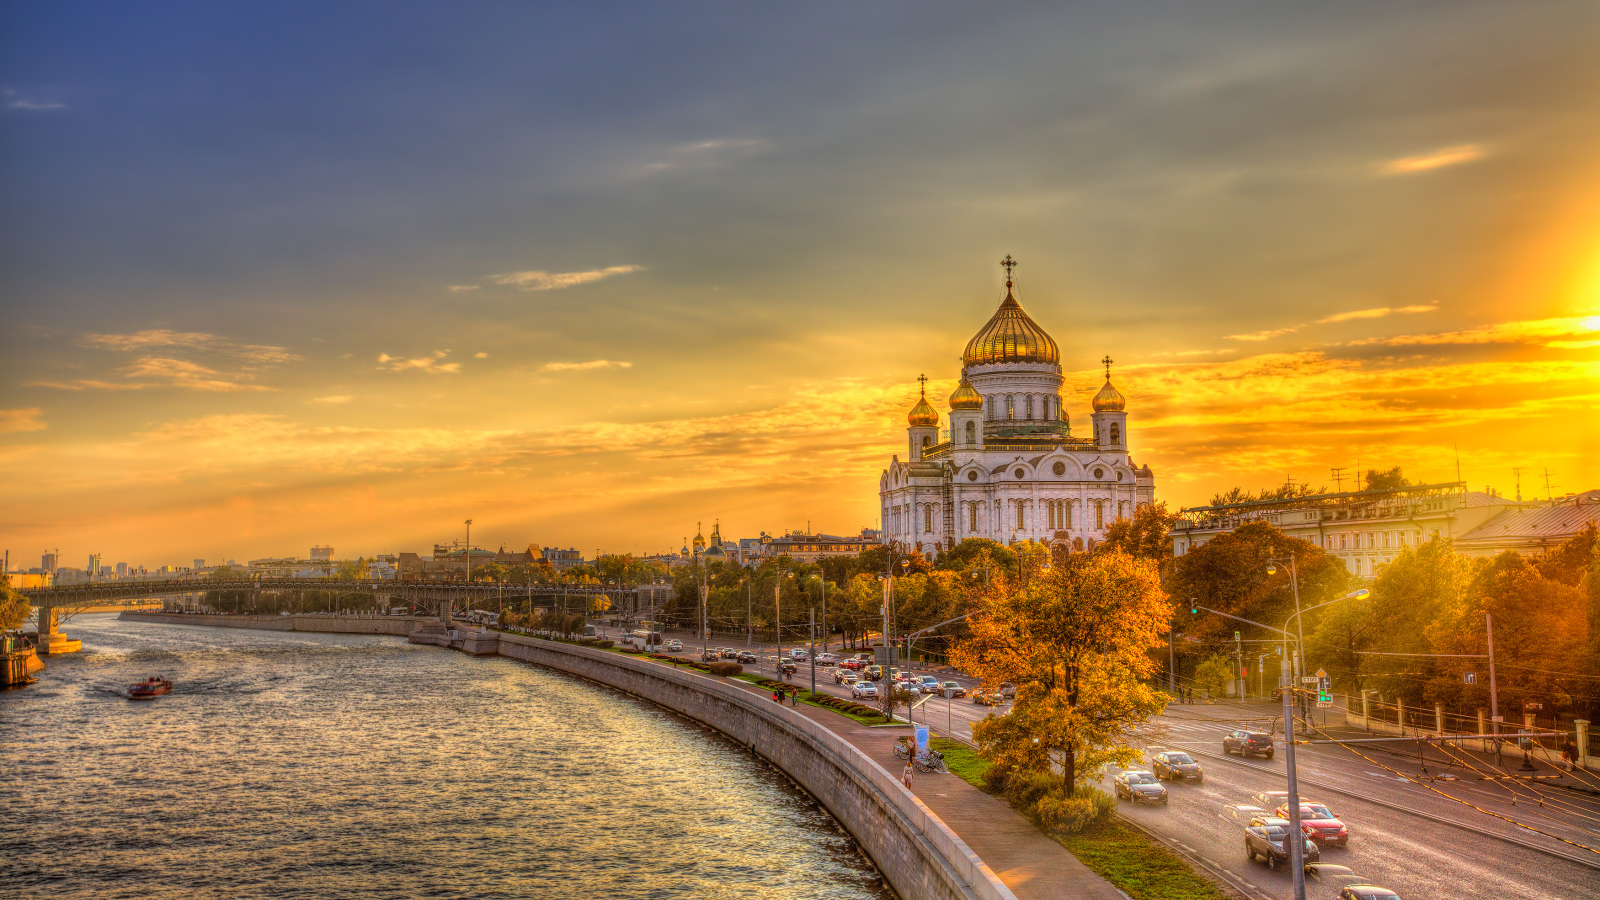 Храм Христа Спасителя на фоне заката, Москва. Россия 